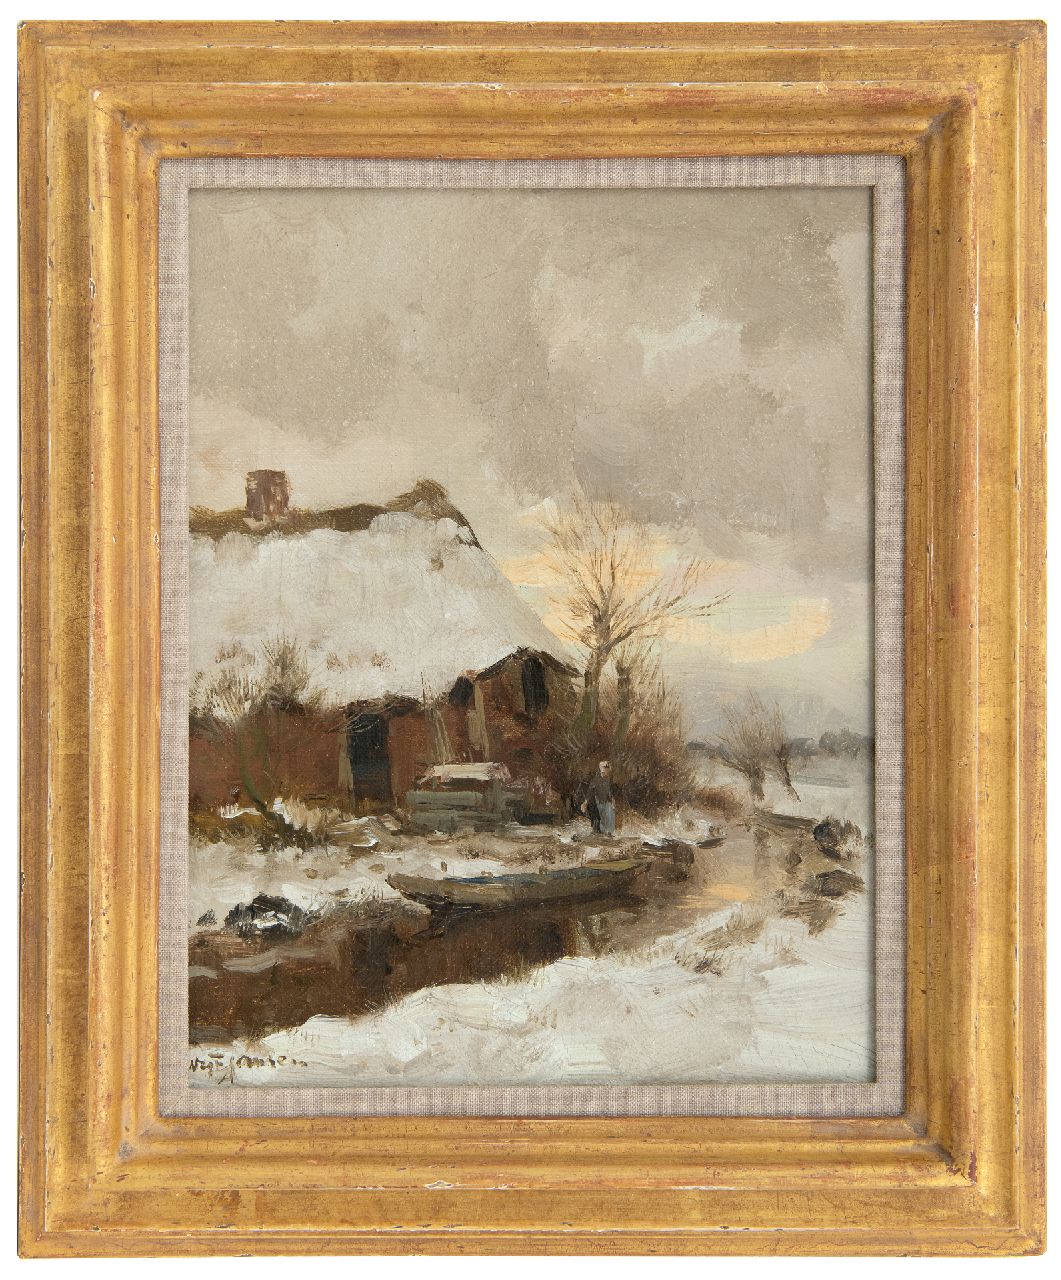 Jansen W.G.F.  | 'Willem' George Frederik Jansen, Boerderijtje in de sneeuw, olieverf op doek 30,5 x 24,5 cm, gesigneerd linksonder